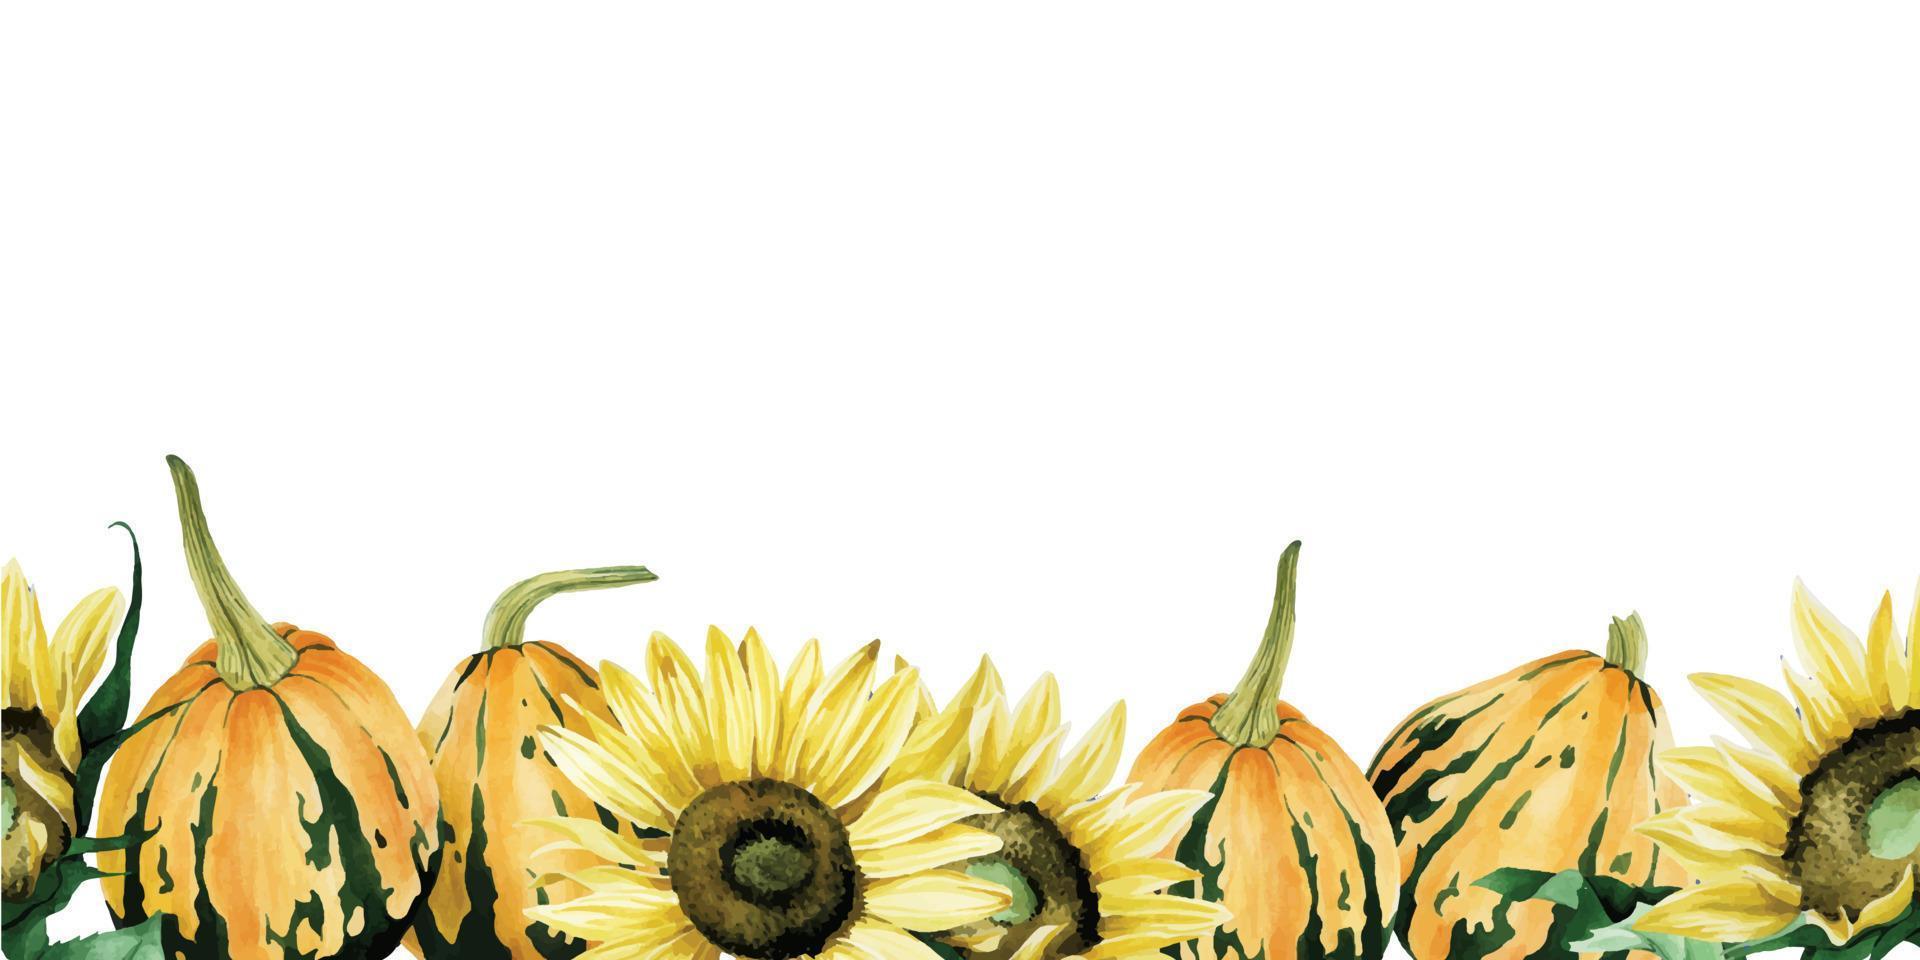 naadloze aquarel grens met pompoenen en zonnebloemen. grens, frame, banner op het thema herfst, verfrissing, oogst. dankdag. oranje pompoenen, gele zonnebloemen. vector